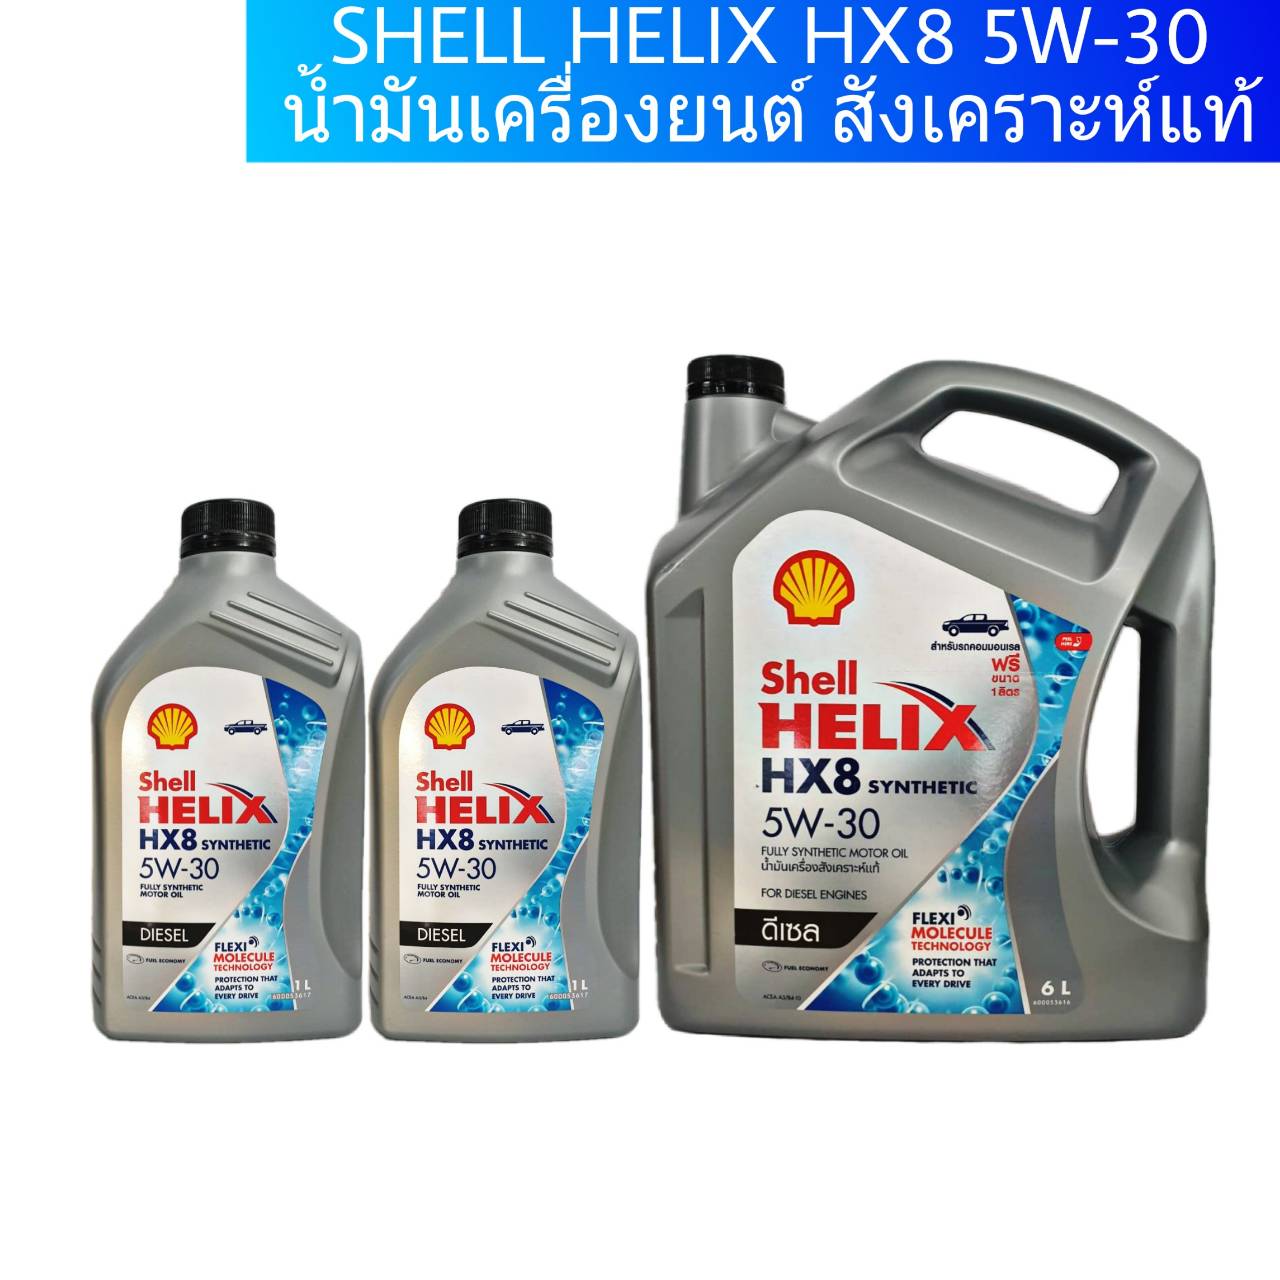 มุมมองเพิ่มเติมของสินค้า Shell HELIX HX8 SYNTHETIC 5W-30 (6ลิตร) (7ลิตร) (8ลิตร) น้ำมันเครื่องยนต์ดีเซล สังเคราะห์แท้ 100% !!ล๊อตใหม่ล่าสุด กดเลือกปริมาณที่ต้องการเลยค่ะ